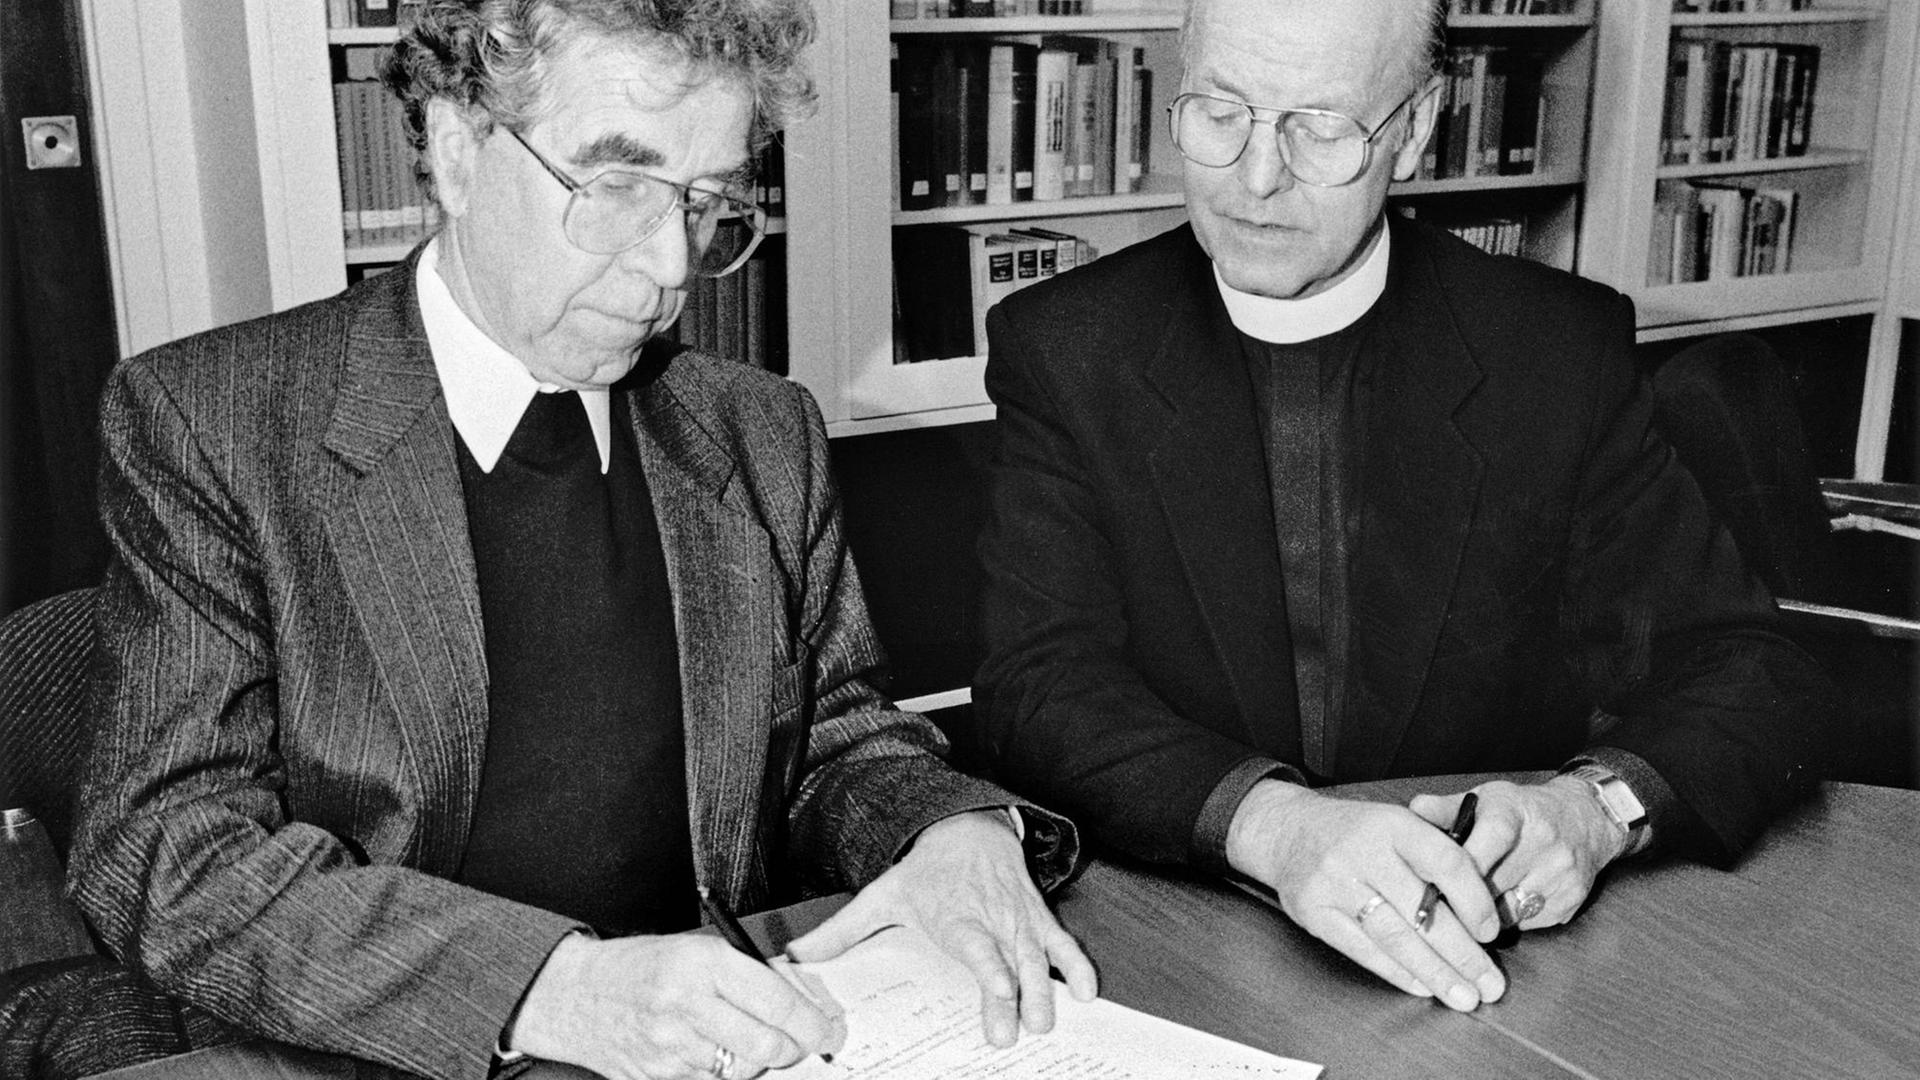 Martin Kruse und Werner Leich unterzeichnen die Loccumer Erklärung.